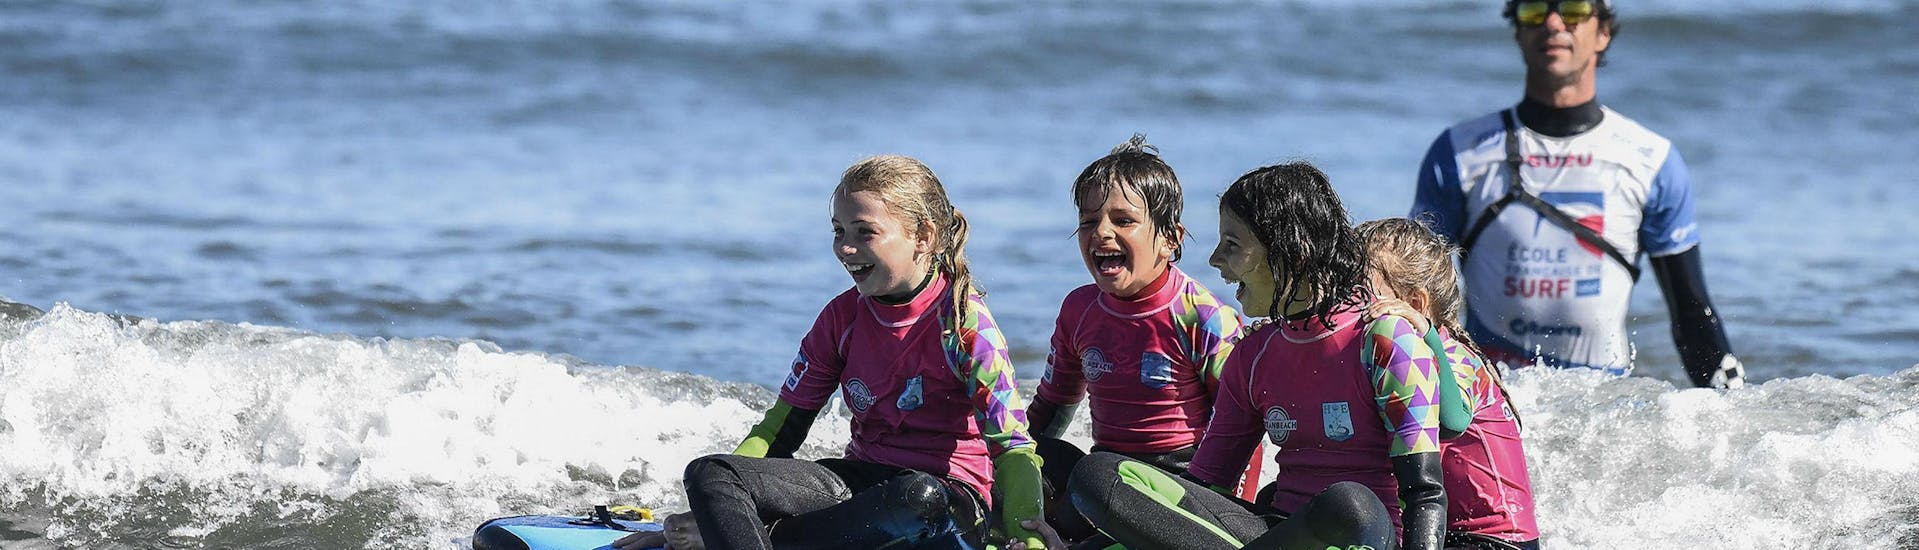 Lezioni di surf a Hendaye da 8 anni per tutti i livelli.